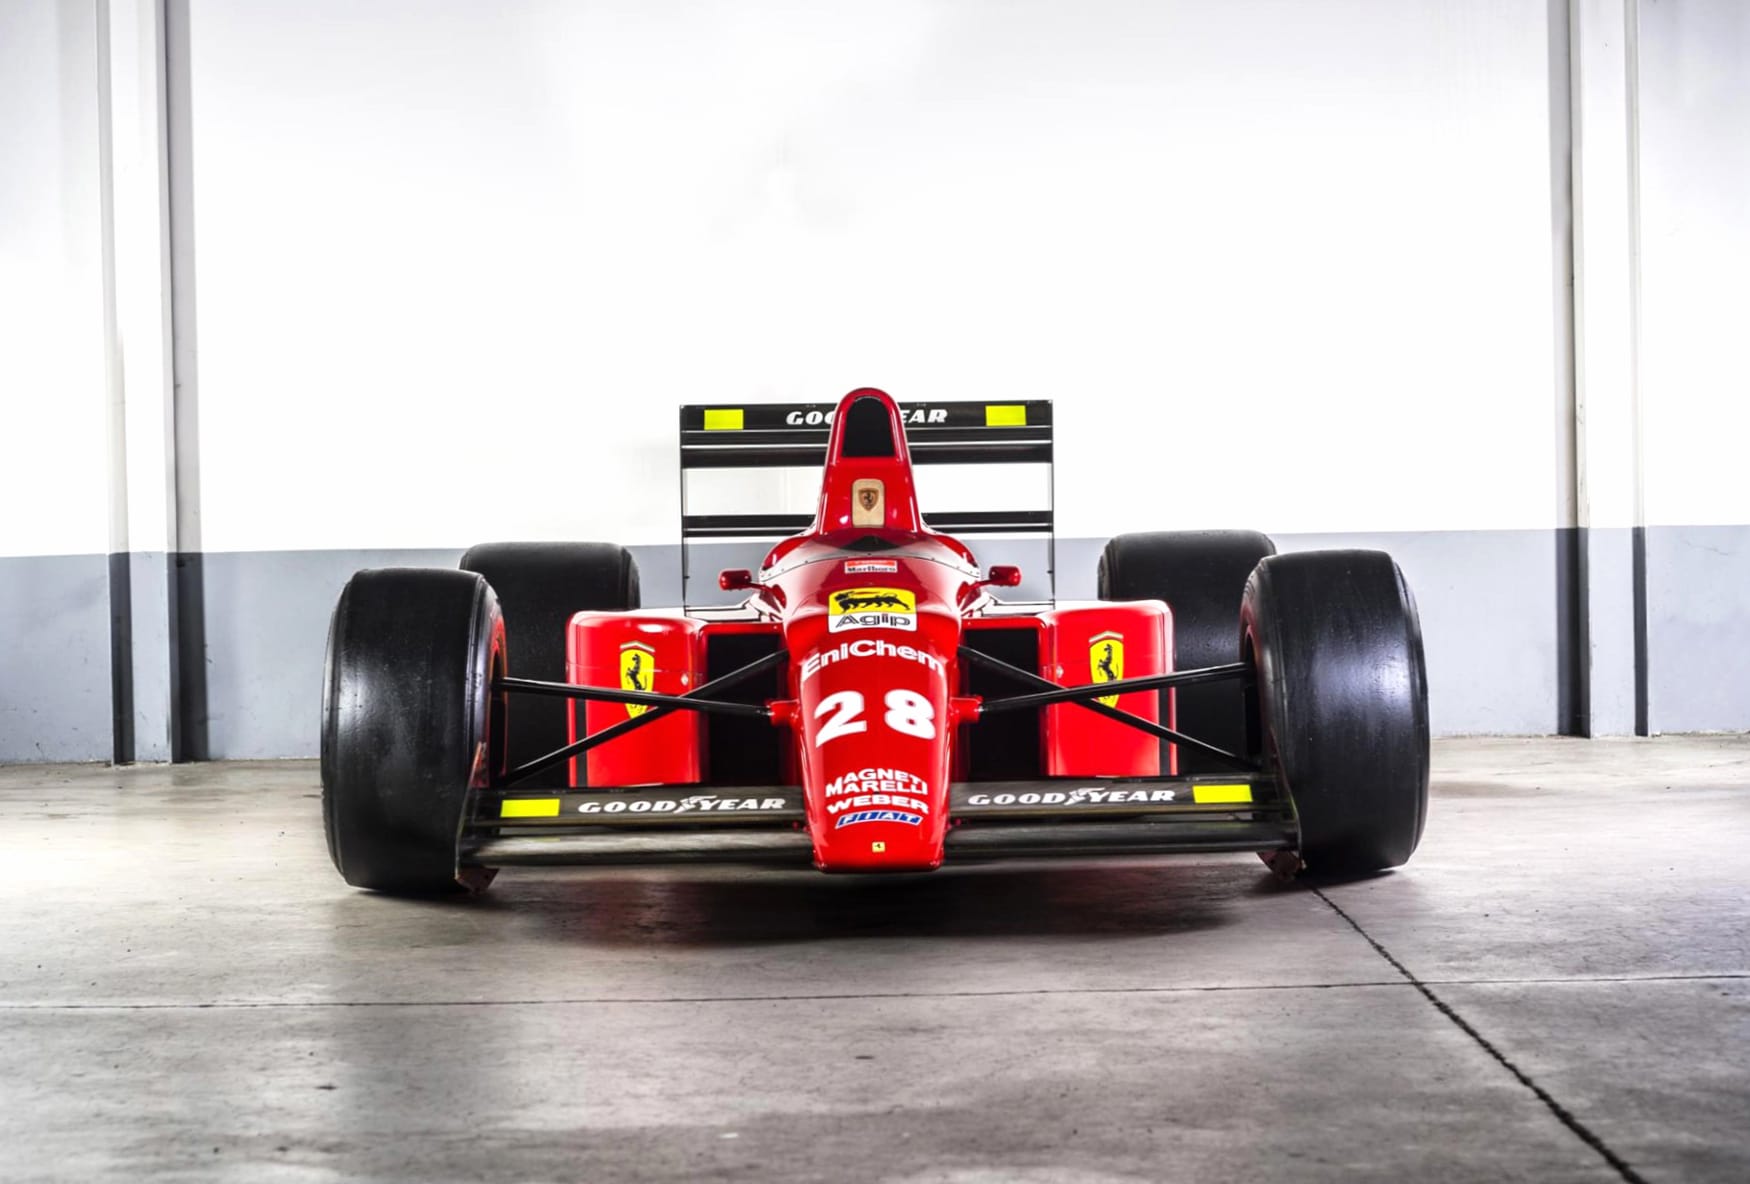 Ferrari F1-89 at 1152 x 864 size wallpapers HD quality